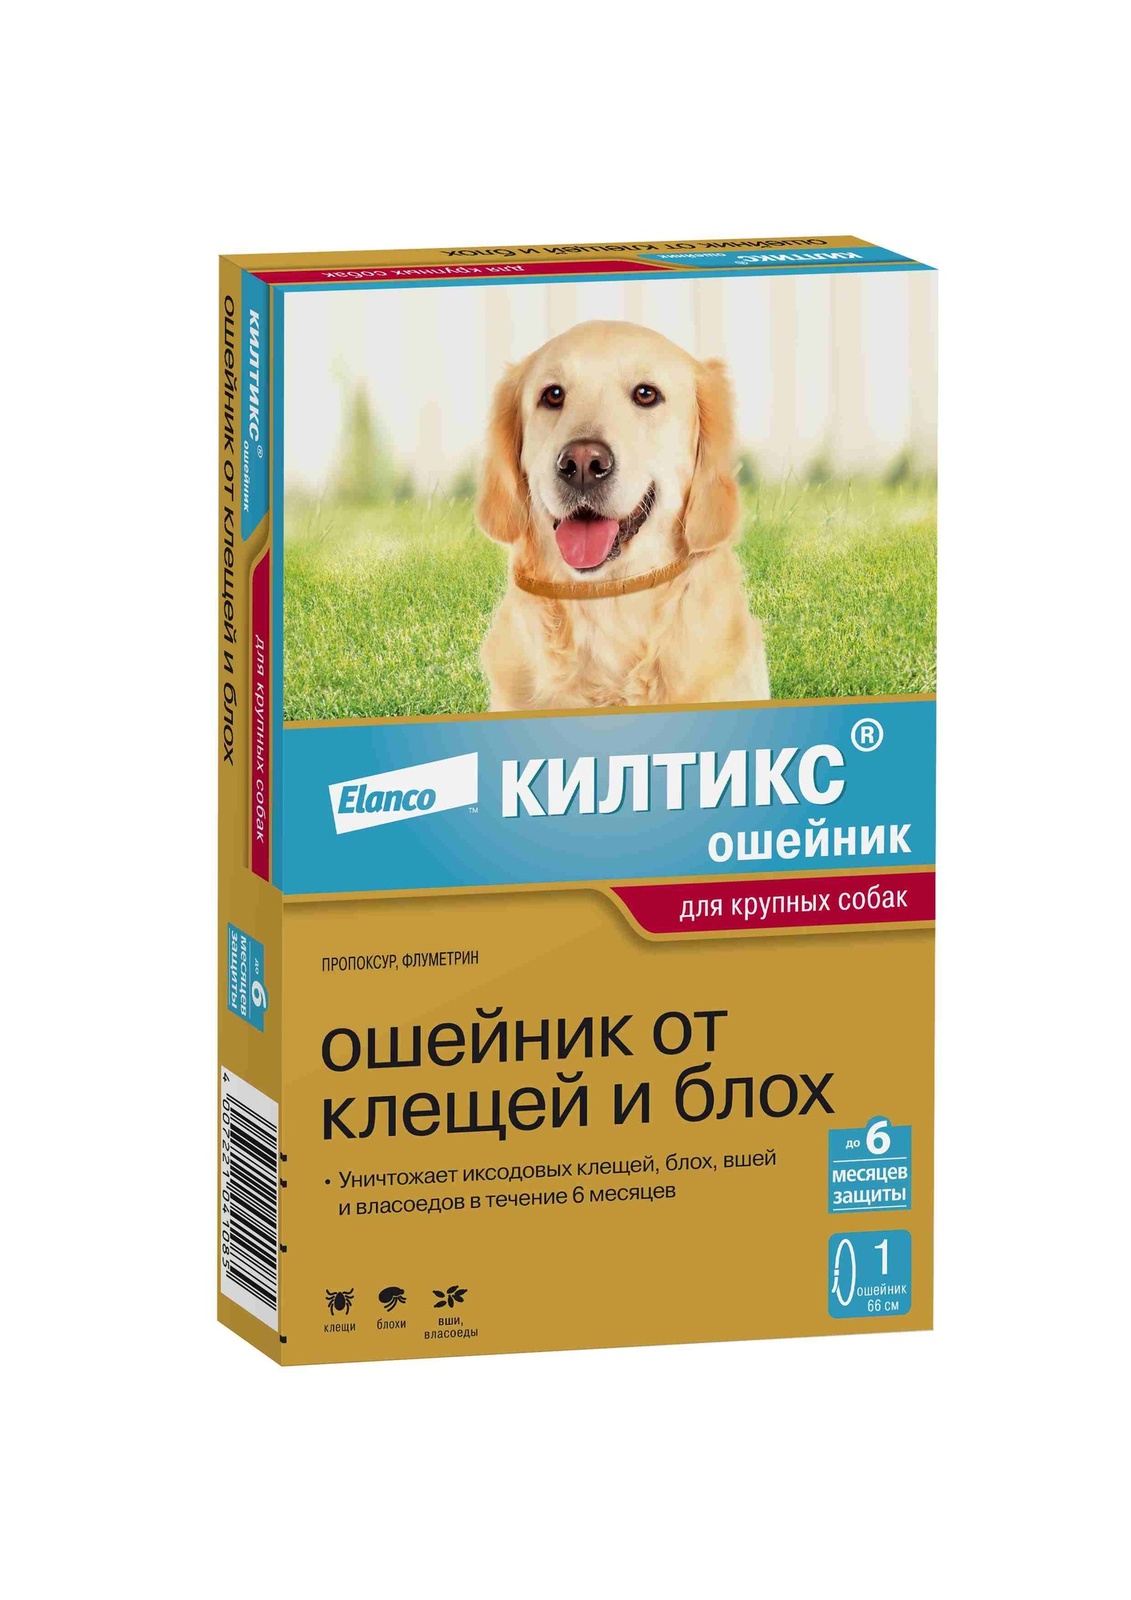 Elanco Elanco ошейник Килтикс® от клещей и блох для собак крупных пород (10 г) цена и фото